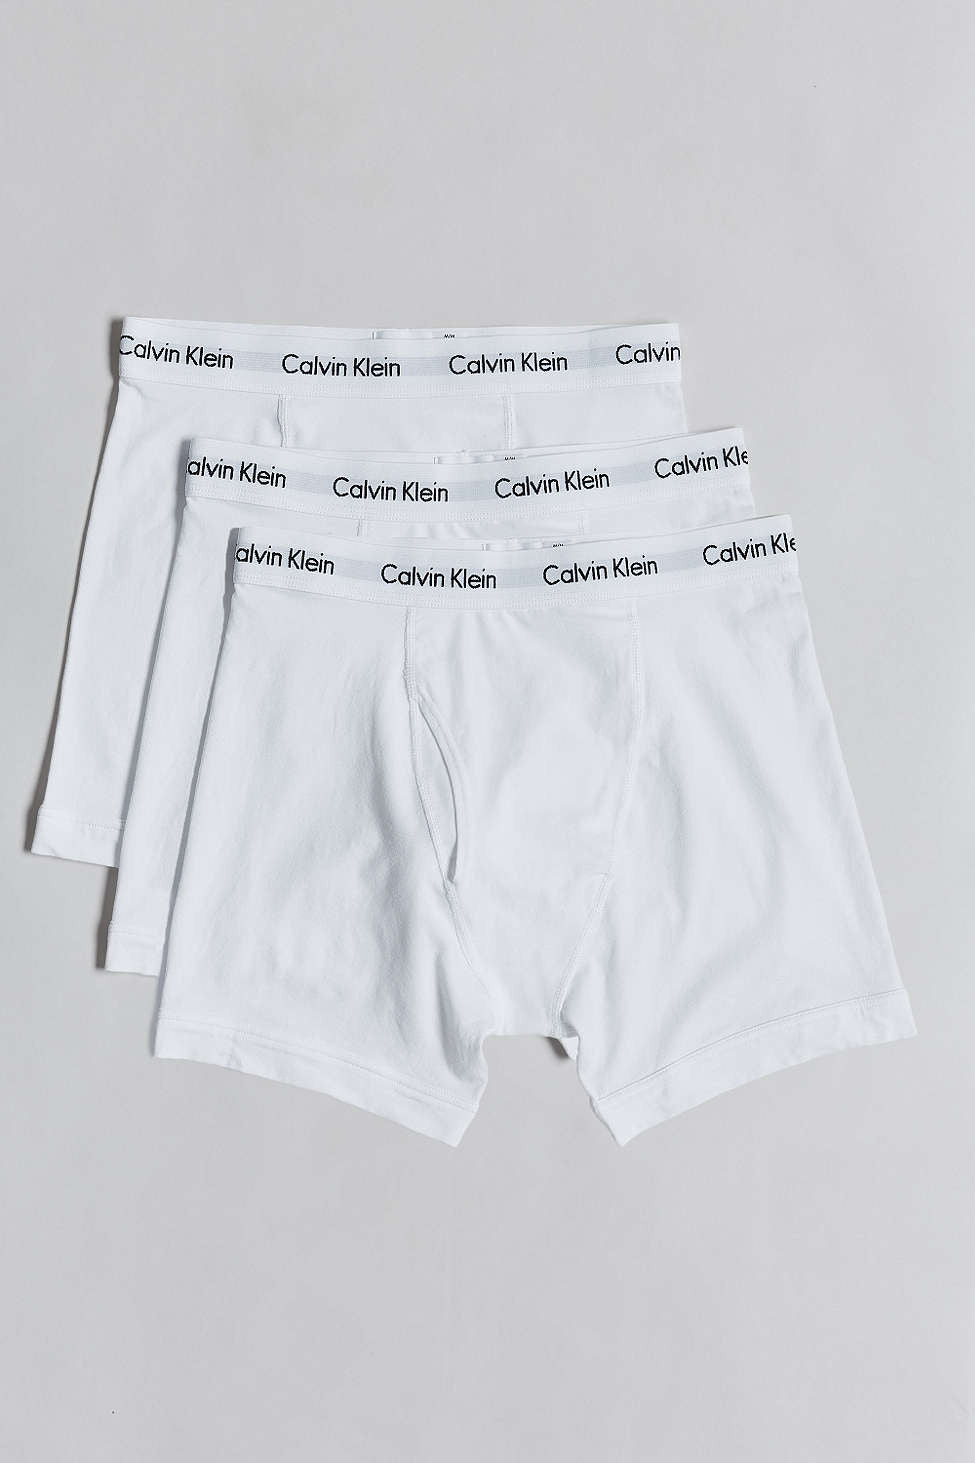 Calvin Klein Men's Cotton Classics 3-Pack Boxer Brief - Black - XL